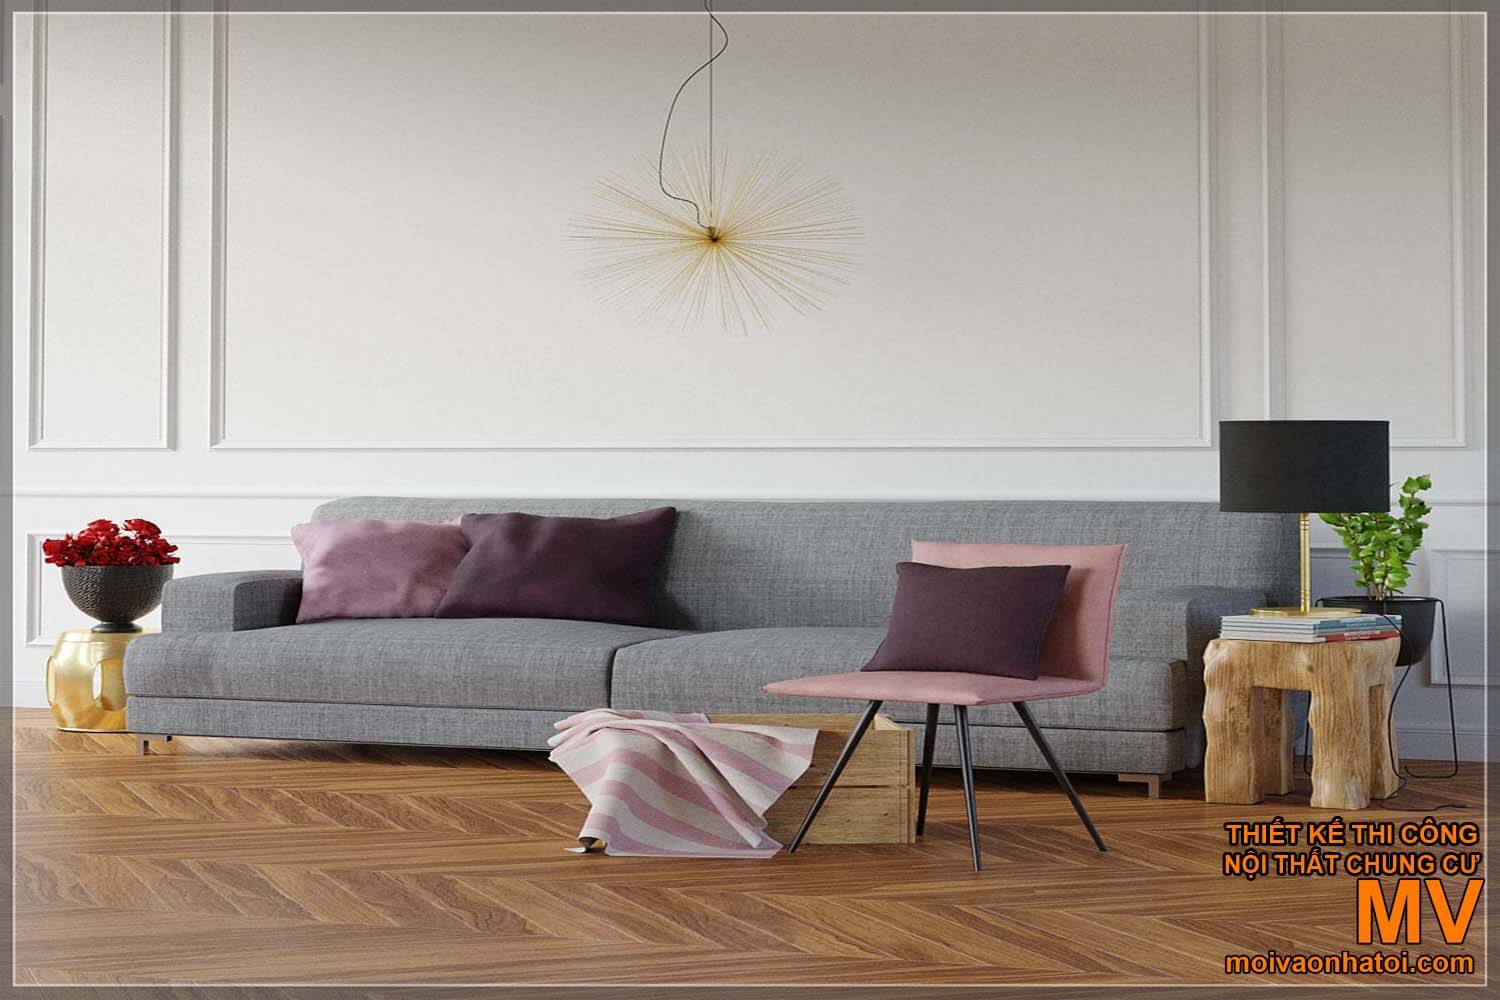 スカンジナビアスタイルの家具モデル